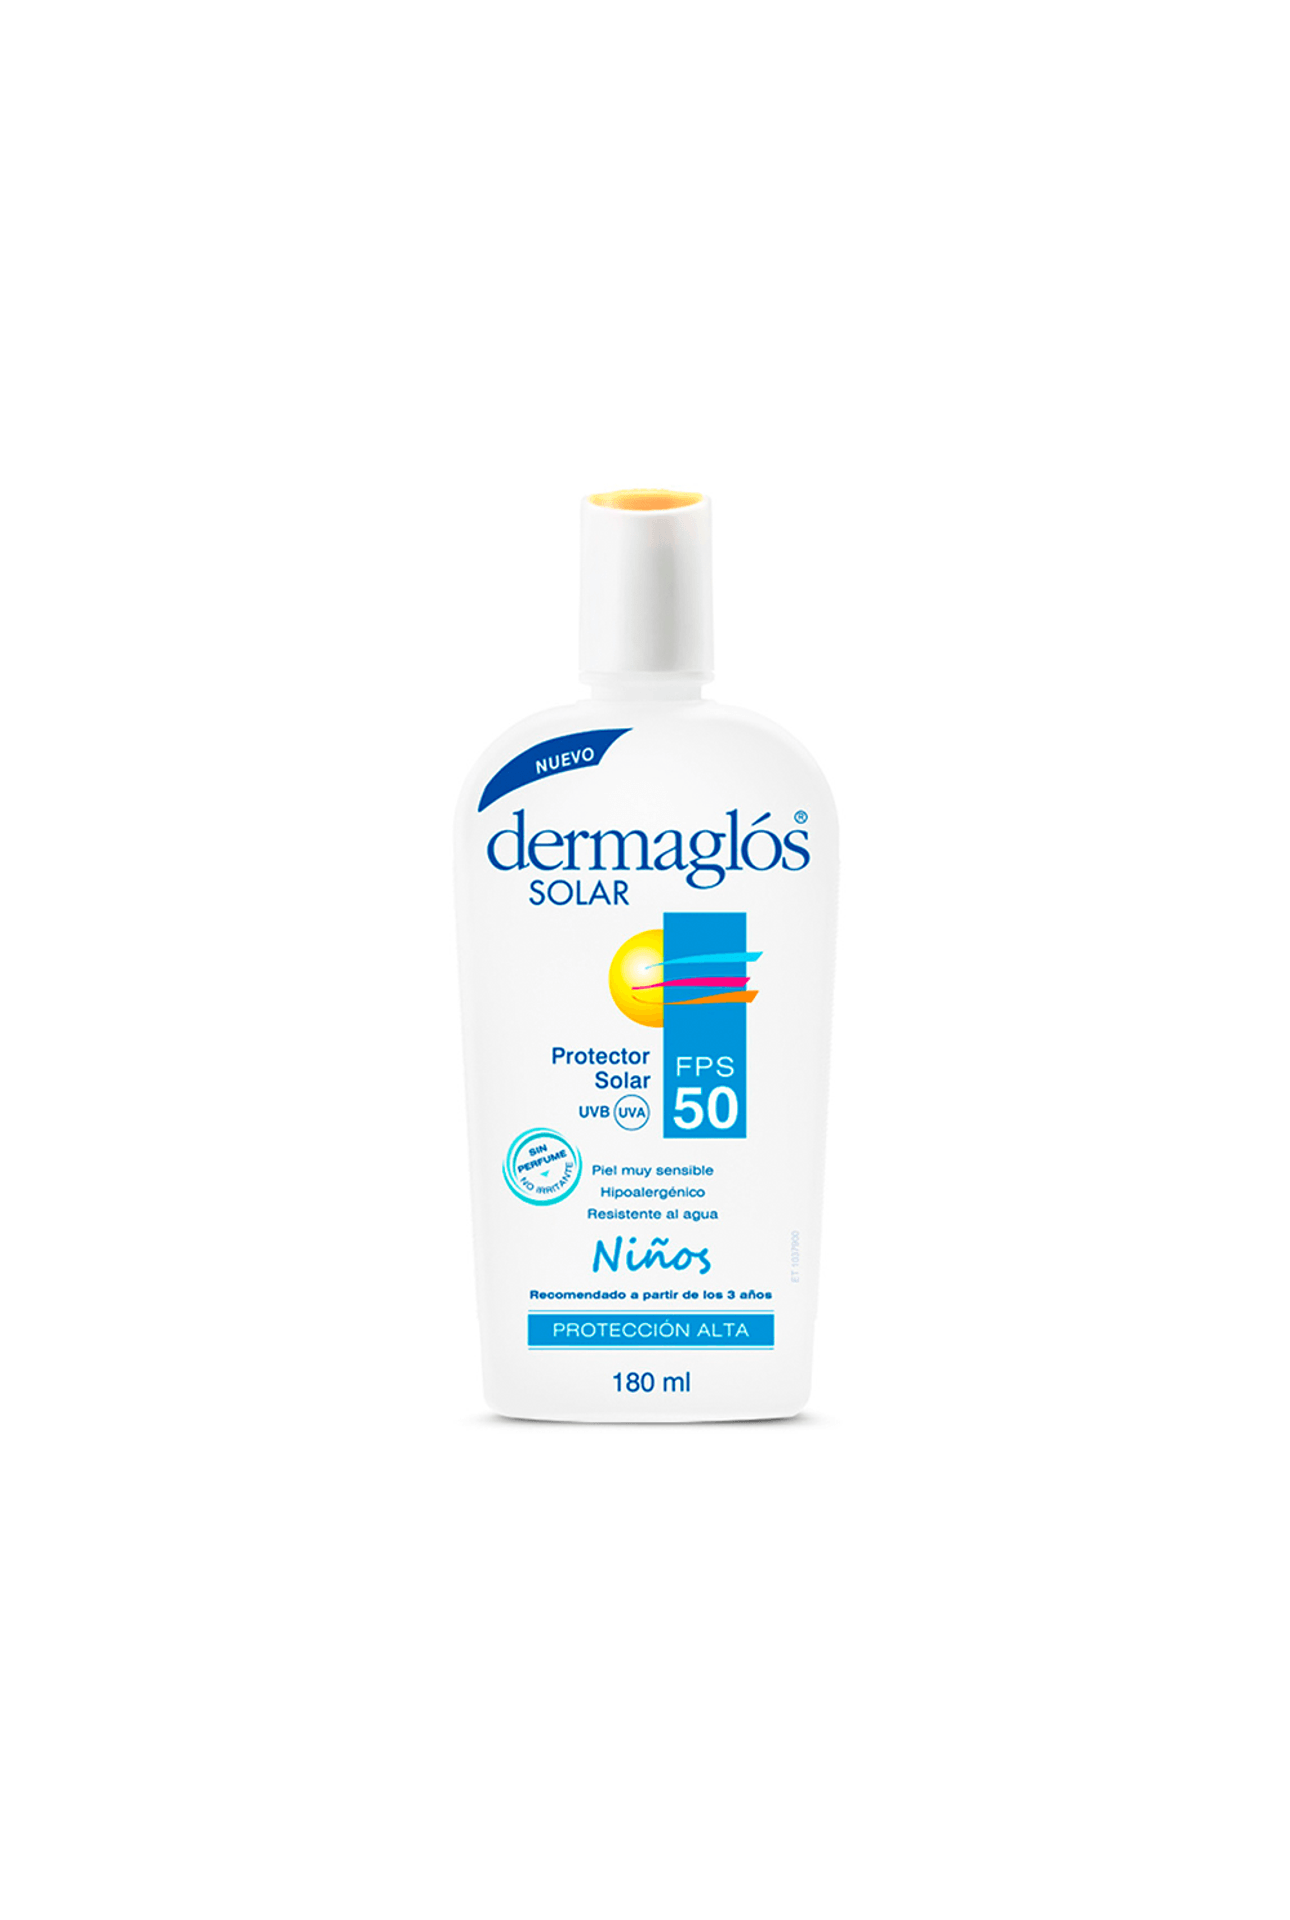 Dermaglos-55561_Dermaglos-Solar-Emulsion-Niños-FPS50-x-180-ml_img1-7793742003790